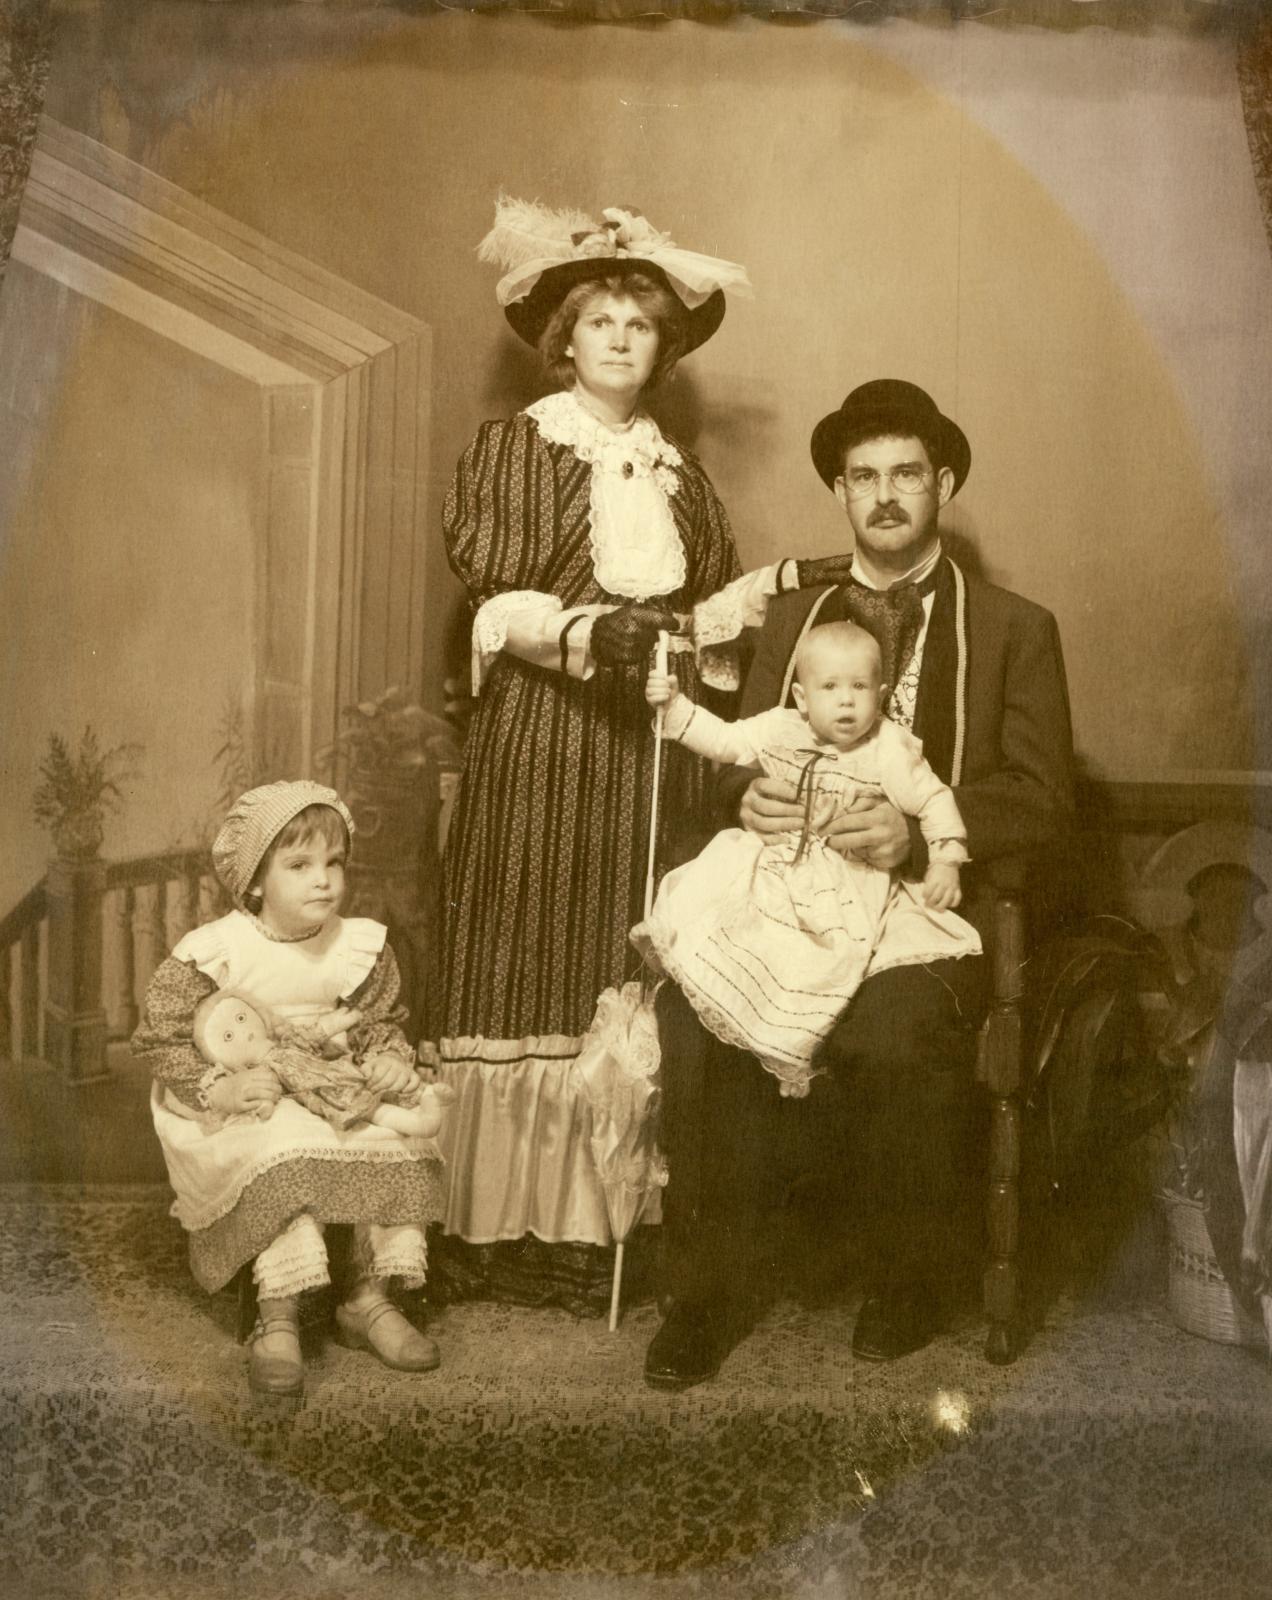 Photographic Emporium family portrait.